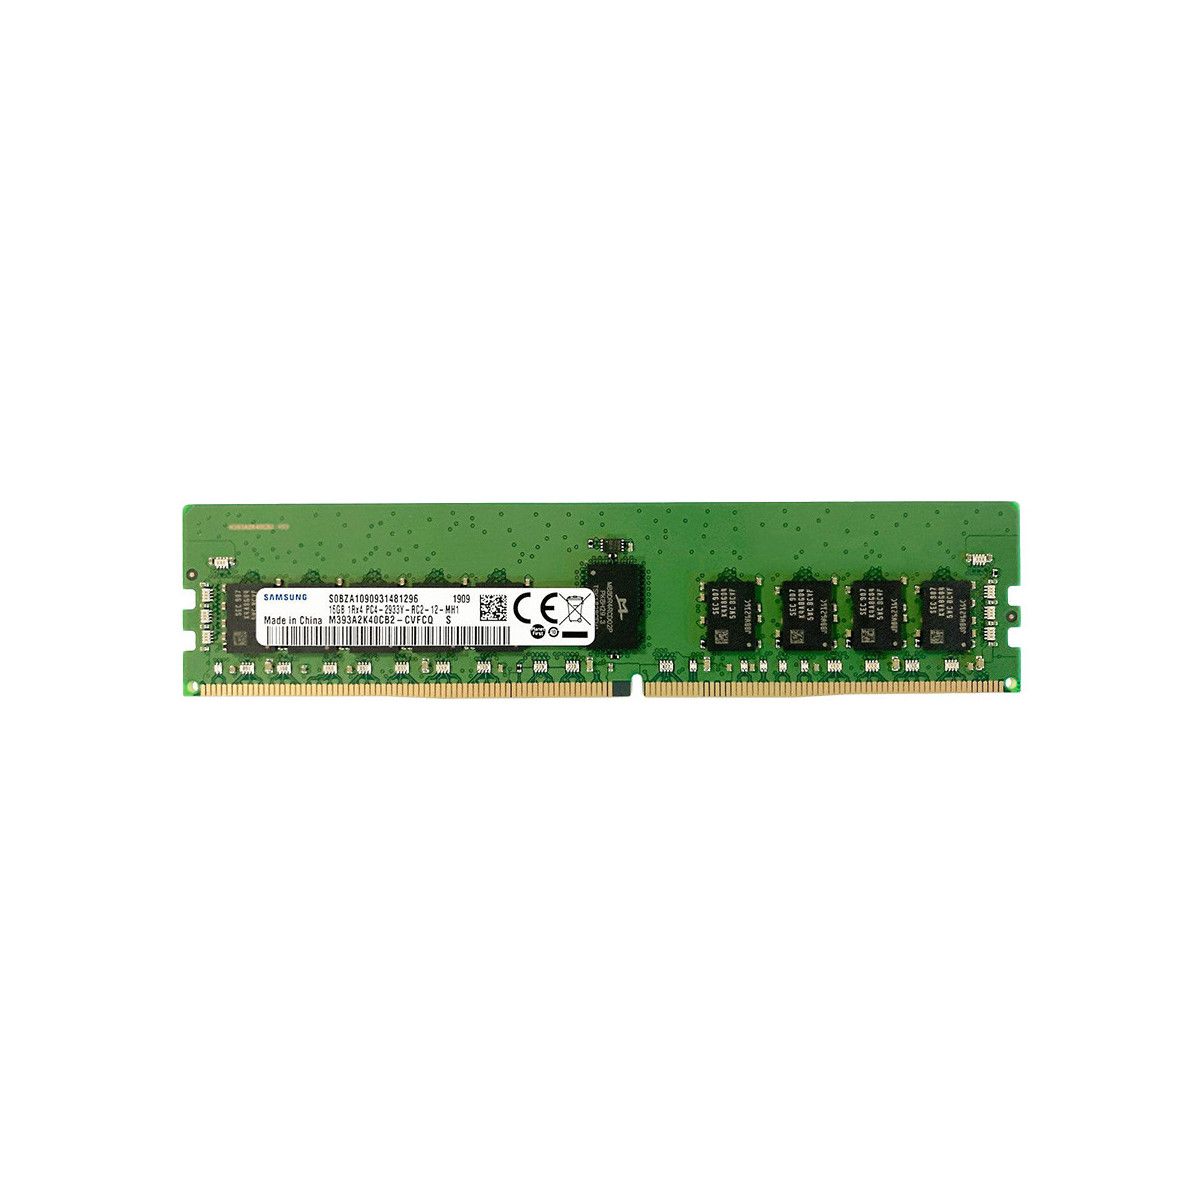 4ZC7A08708-MS -JA- Memstar 1x 16GB DDR4-2933 RDIMM PC4-23466U-R